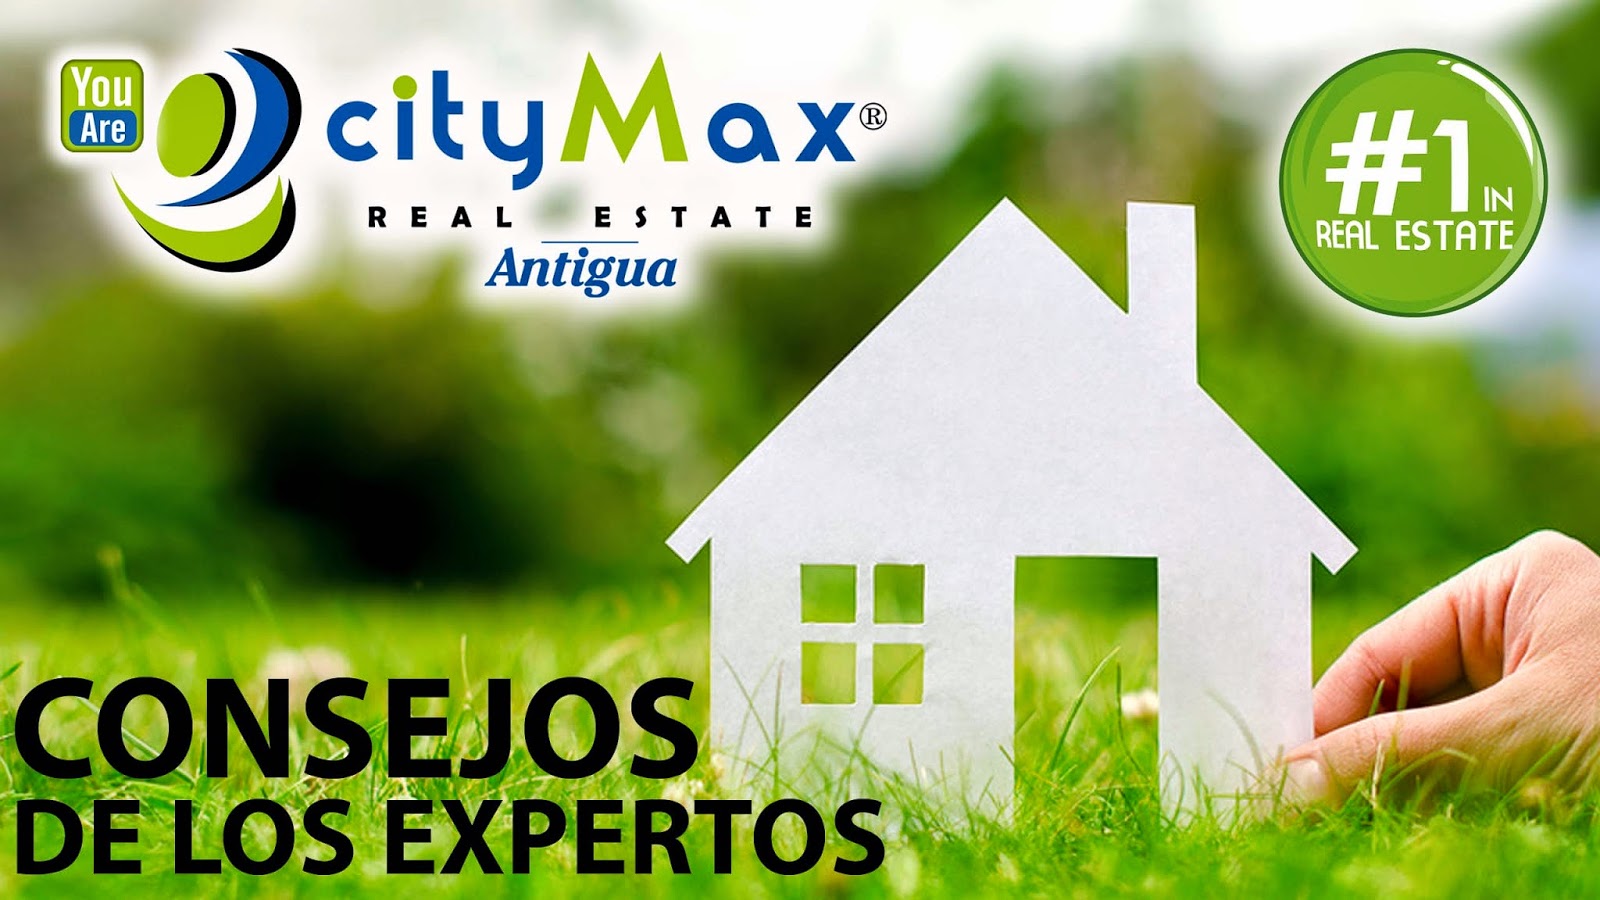 http://www.citymax-ant.com/es/articulos/-5-consejos-de-citymax-para-ser-un-buen-inquilino/index11.html